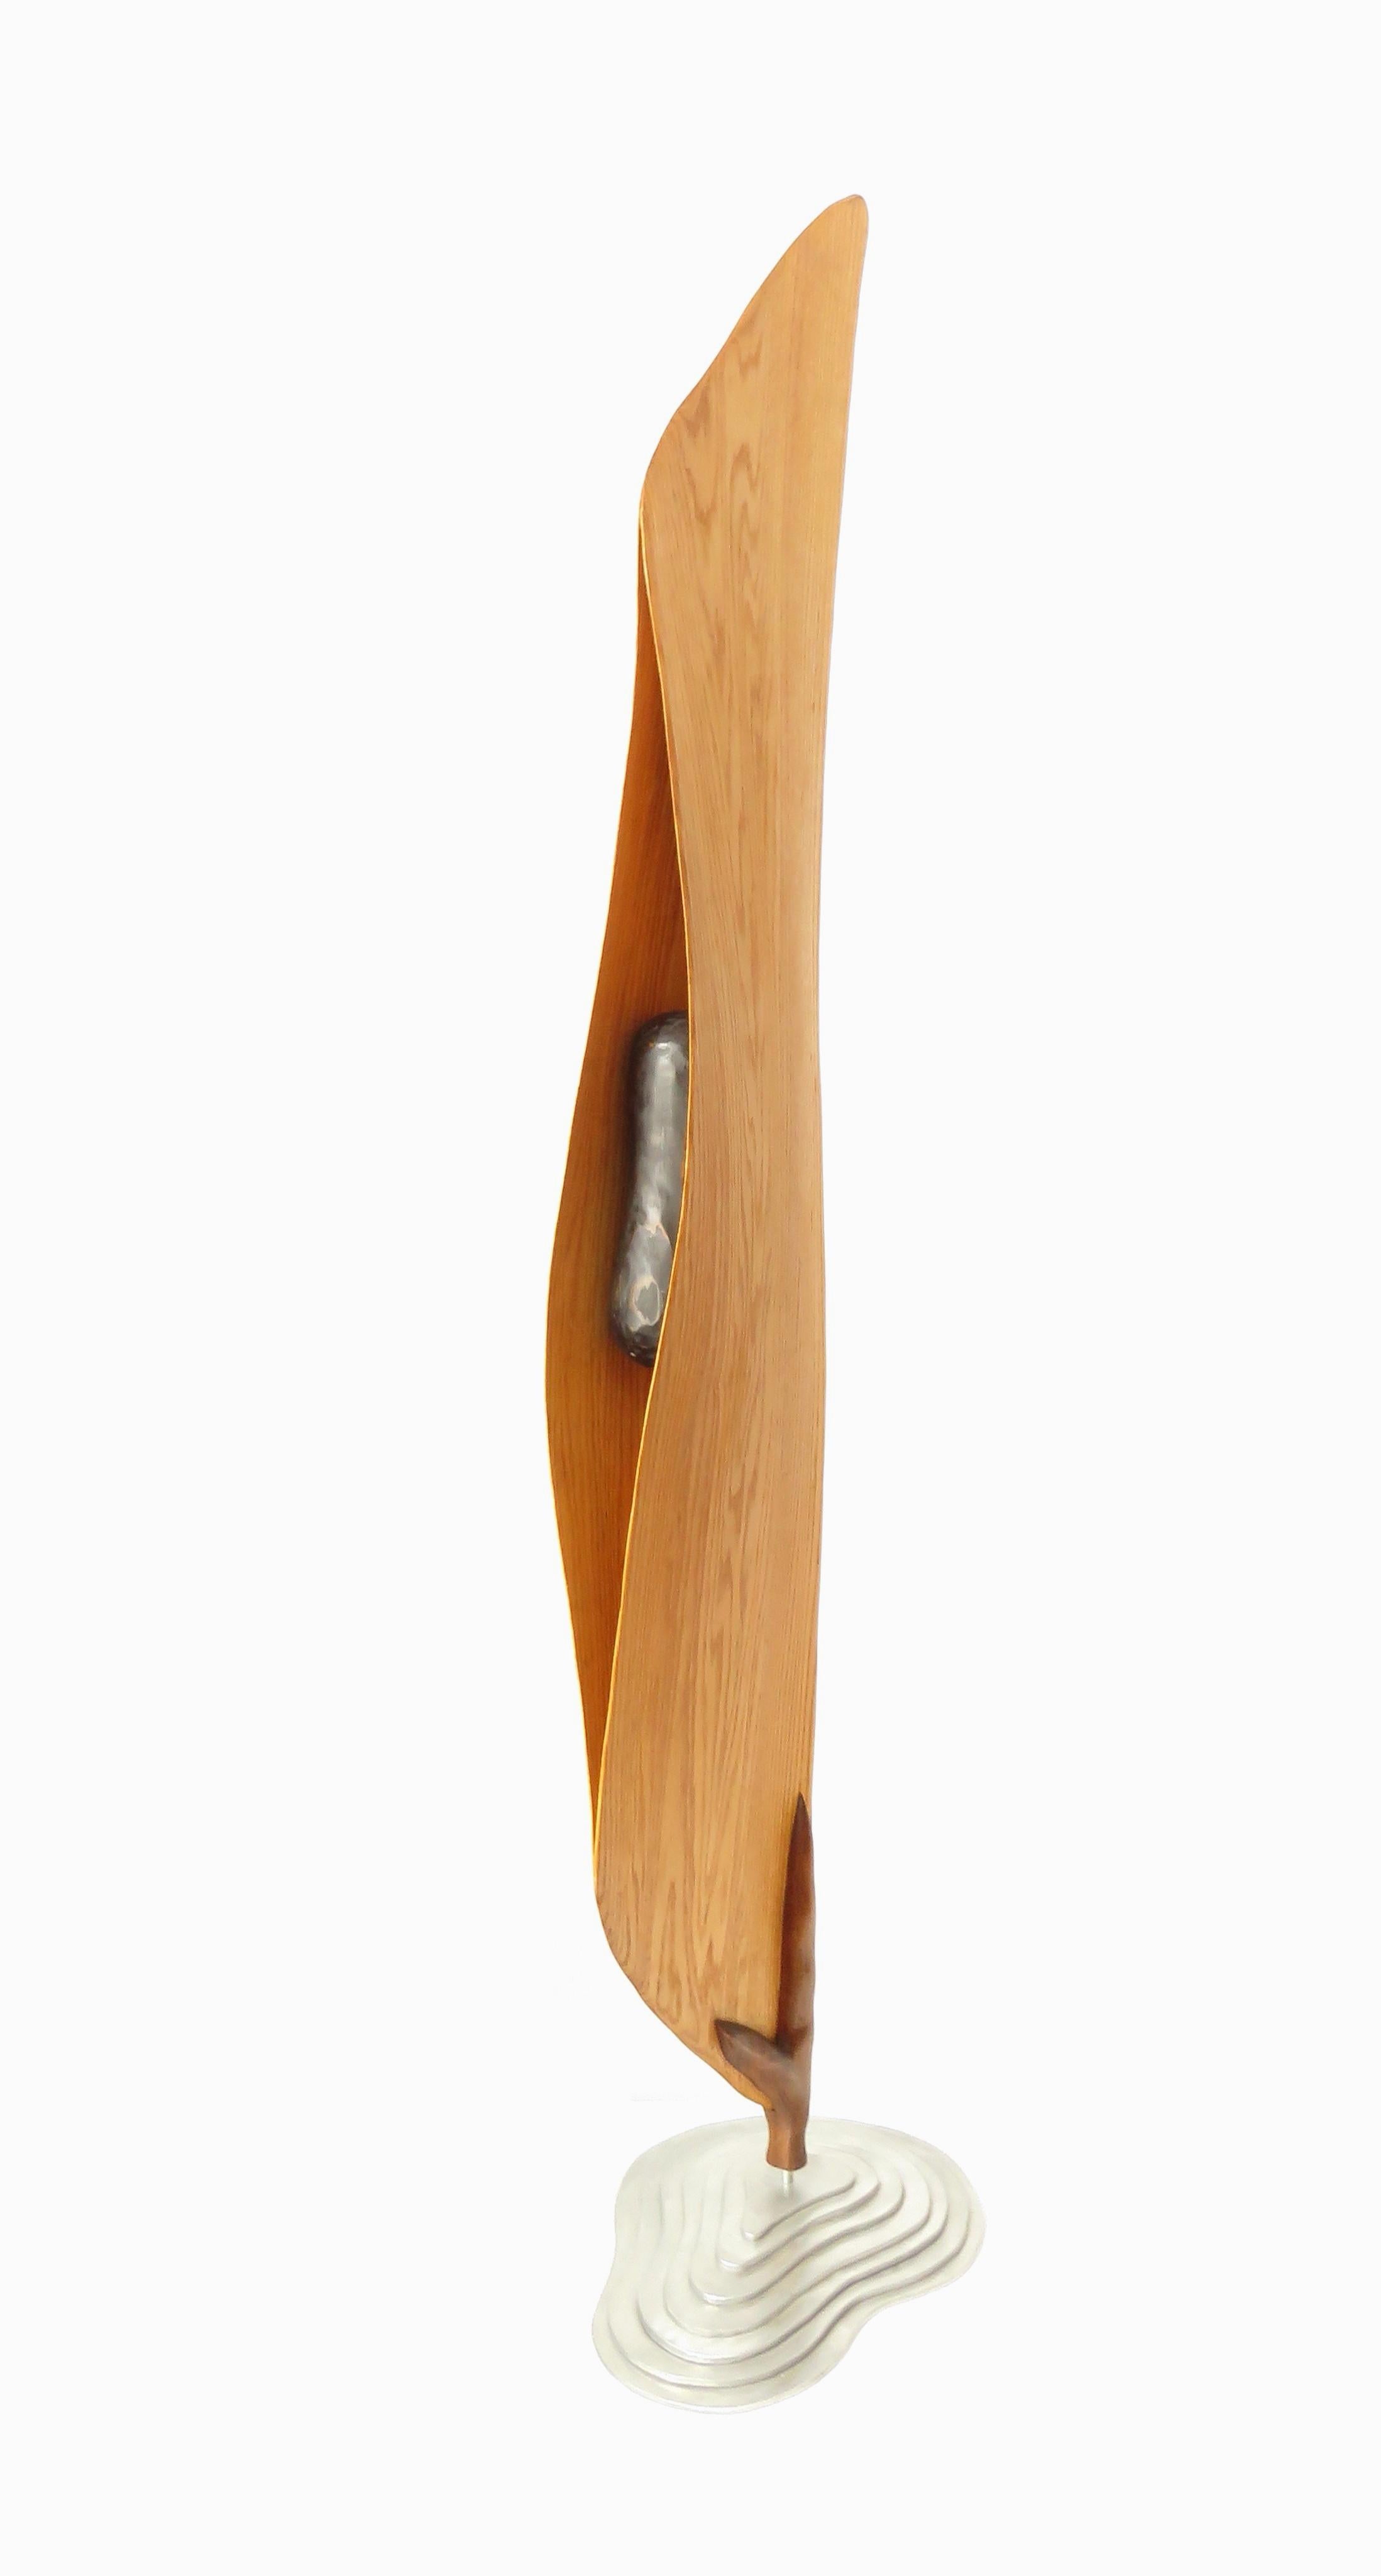 Abstract Sculpture Eric Tardif - Cocon (bois chêne rouge oiseau art abstrait sculpture zen piédestal minimal pea pod)